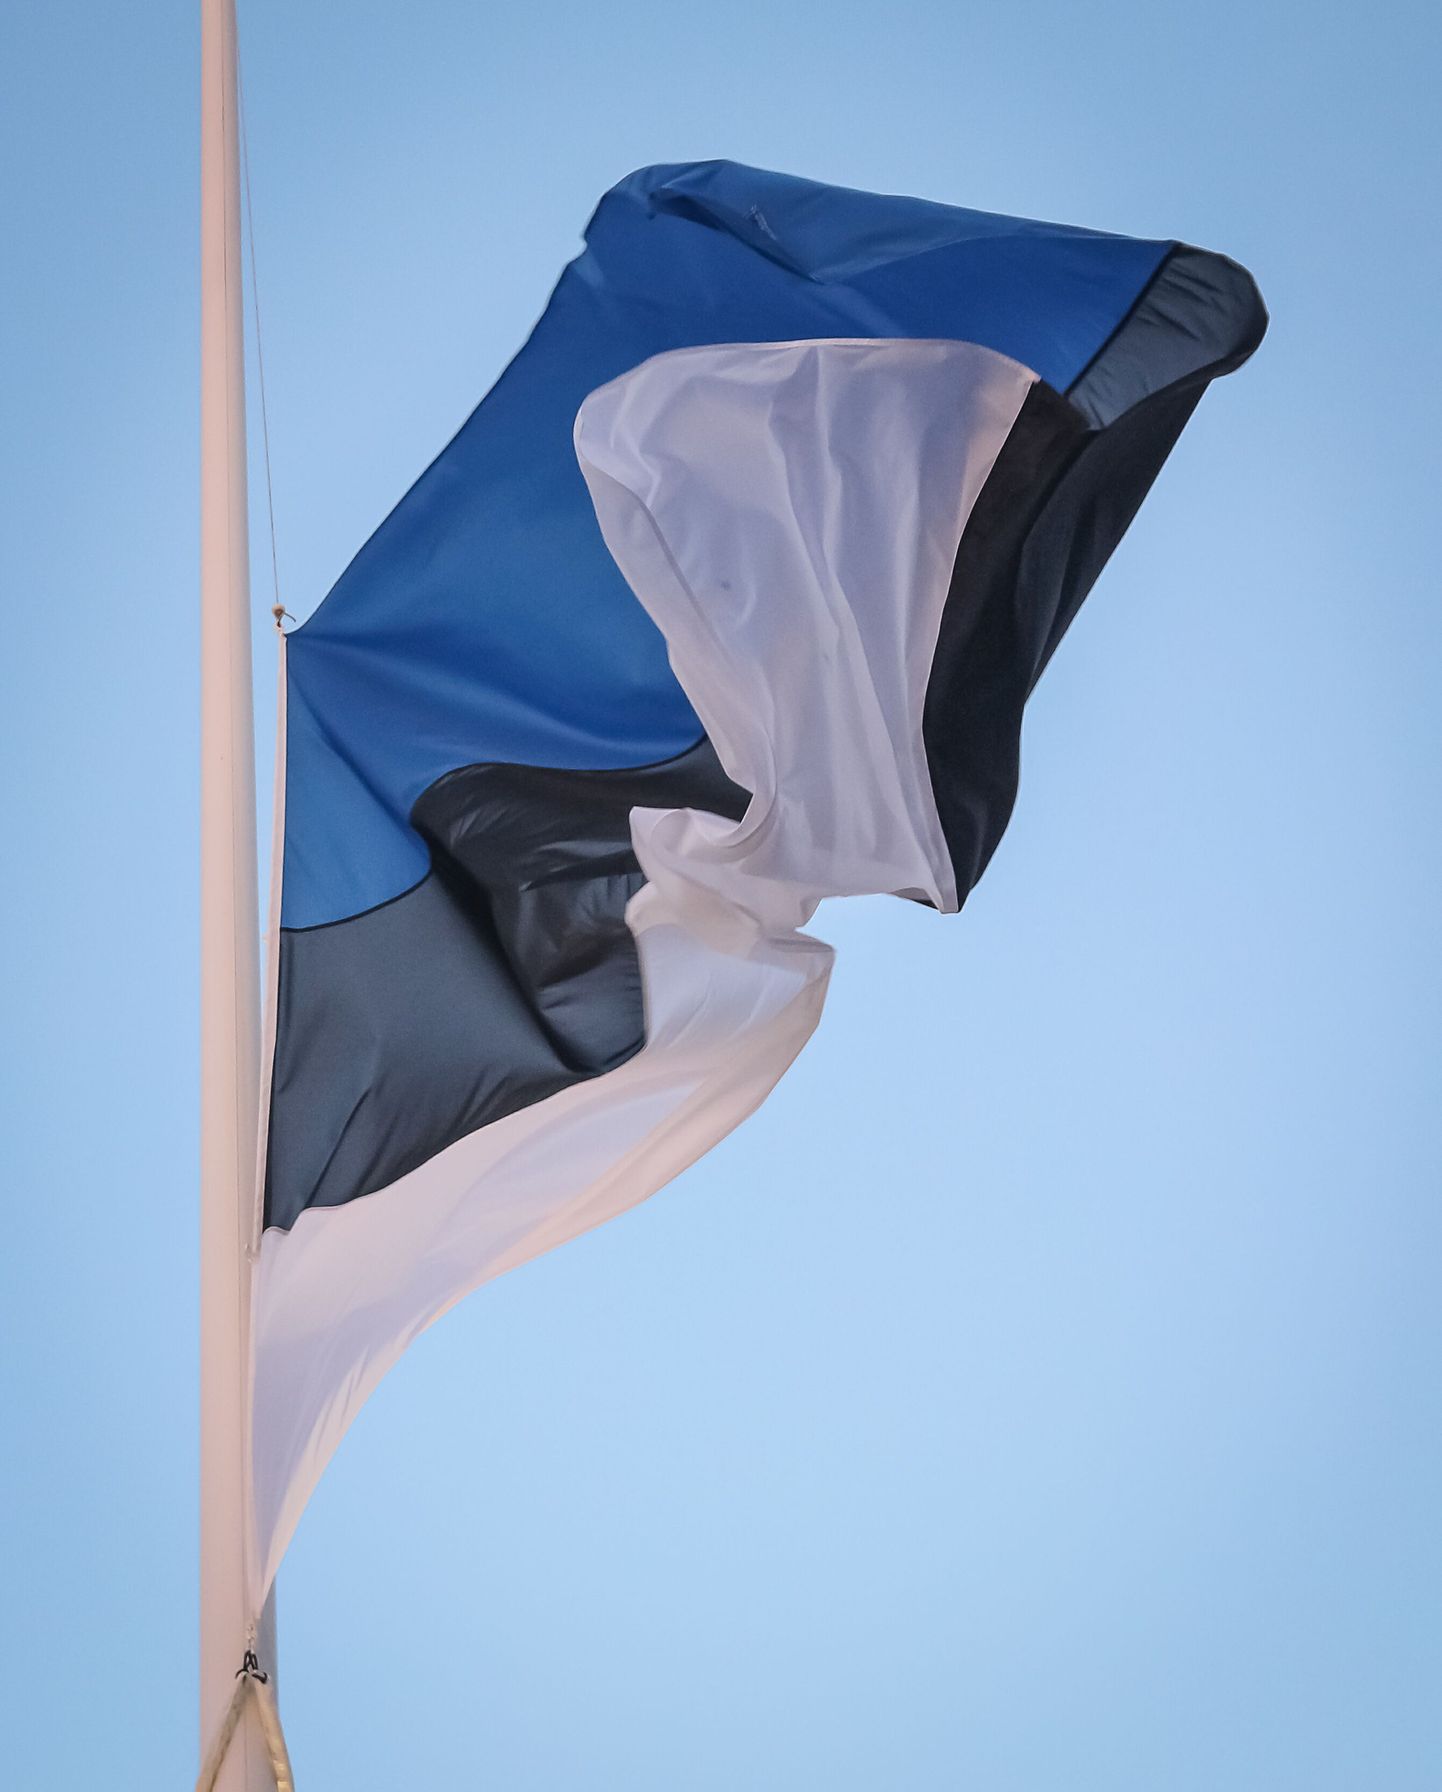 Lipu heiskamine Pärnus Rüütli platsil.